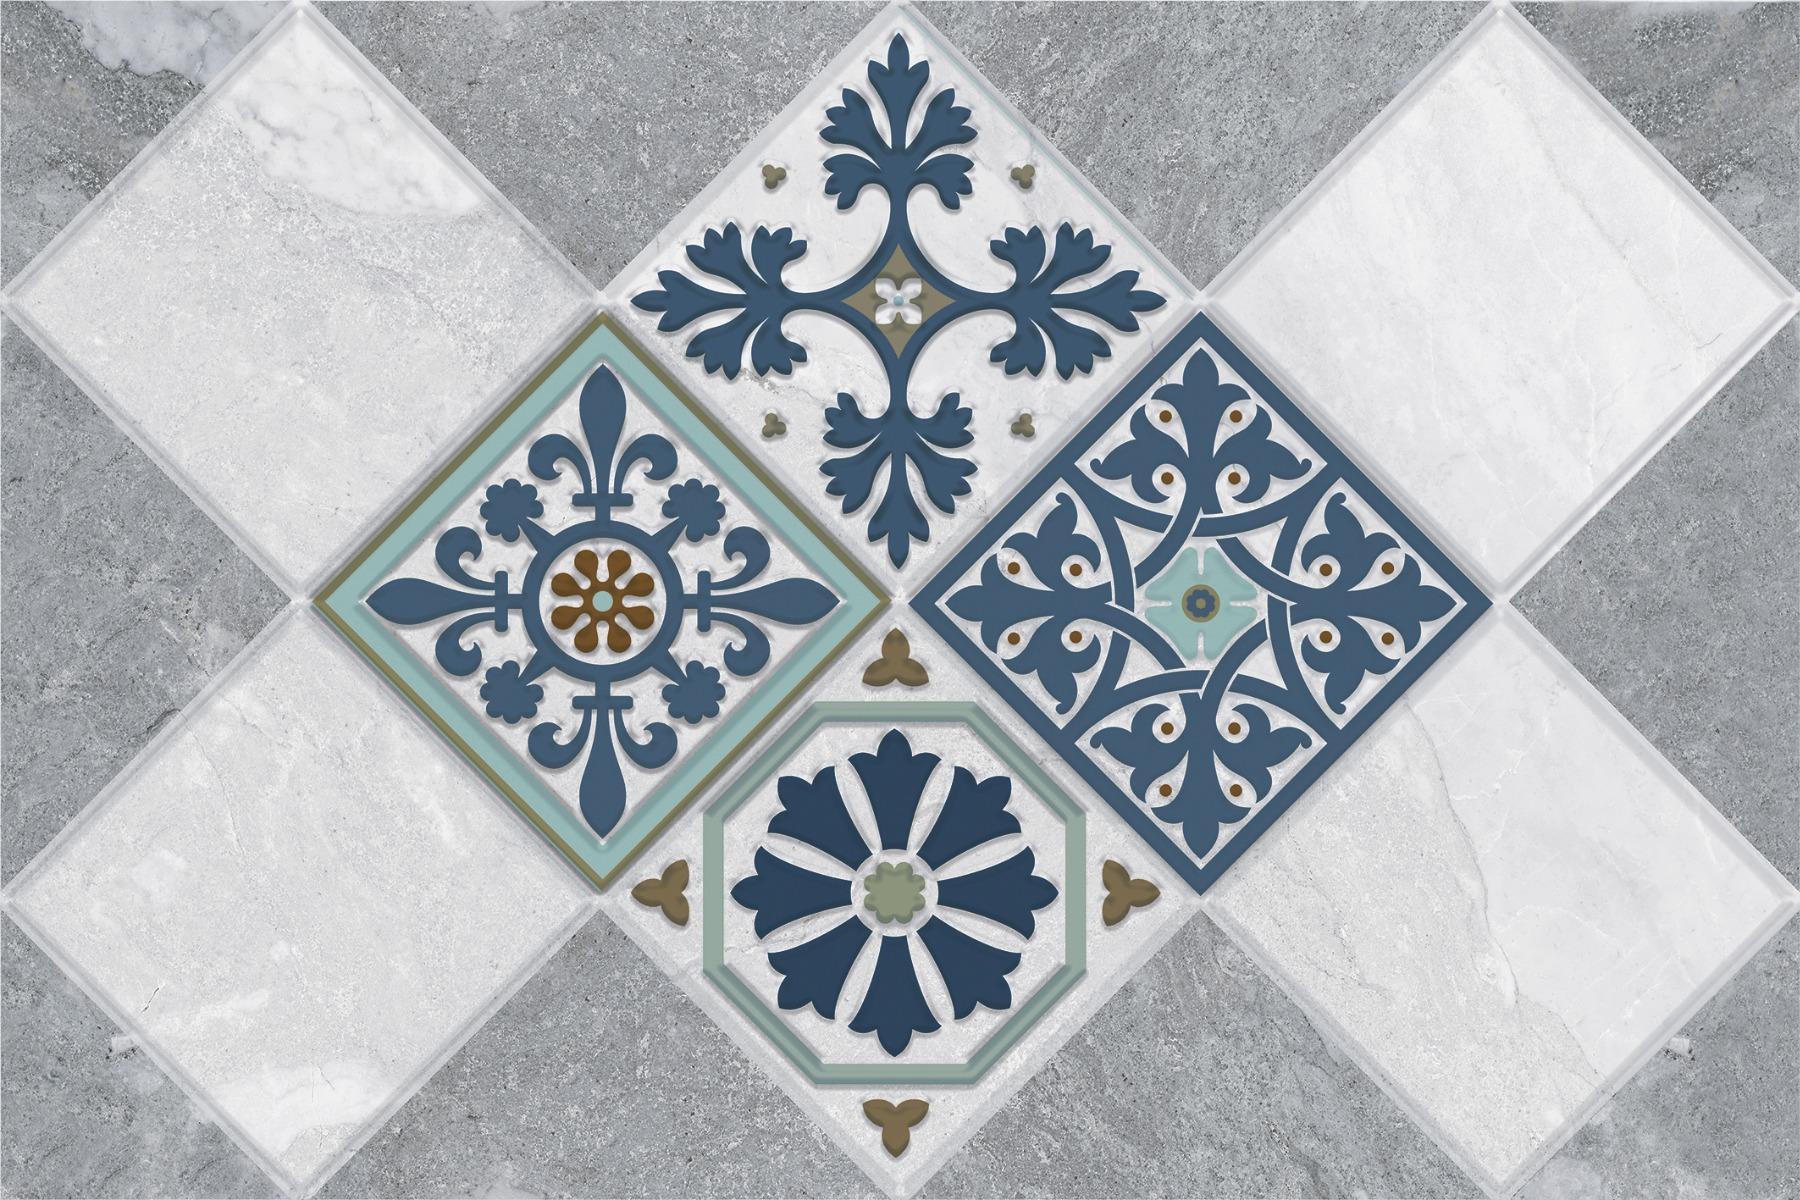 Vitrified Tiles for Bathroom Tiles, Living Room Tiles, Kitchen Tiles, Bedroom Tiles, Balcony Tiles